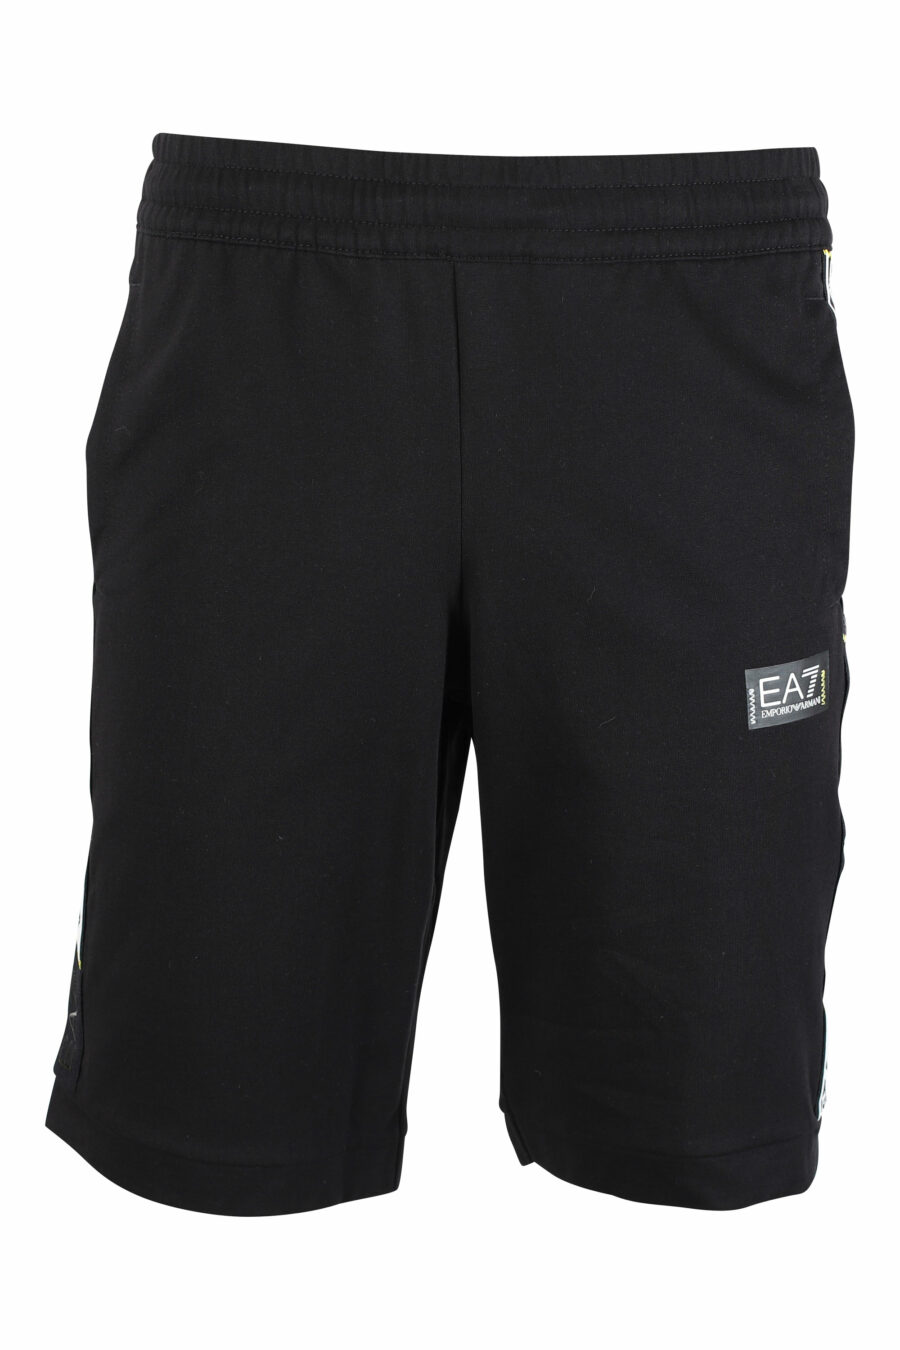 Pantalón de chándal negro corto con logo en cinta laterales - IMG 9504